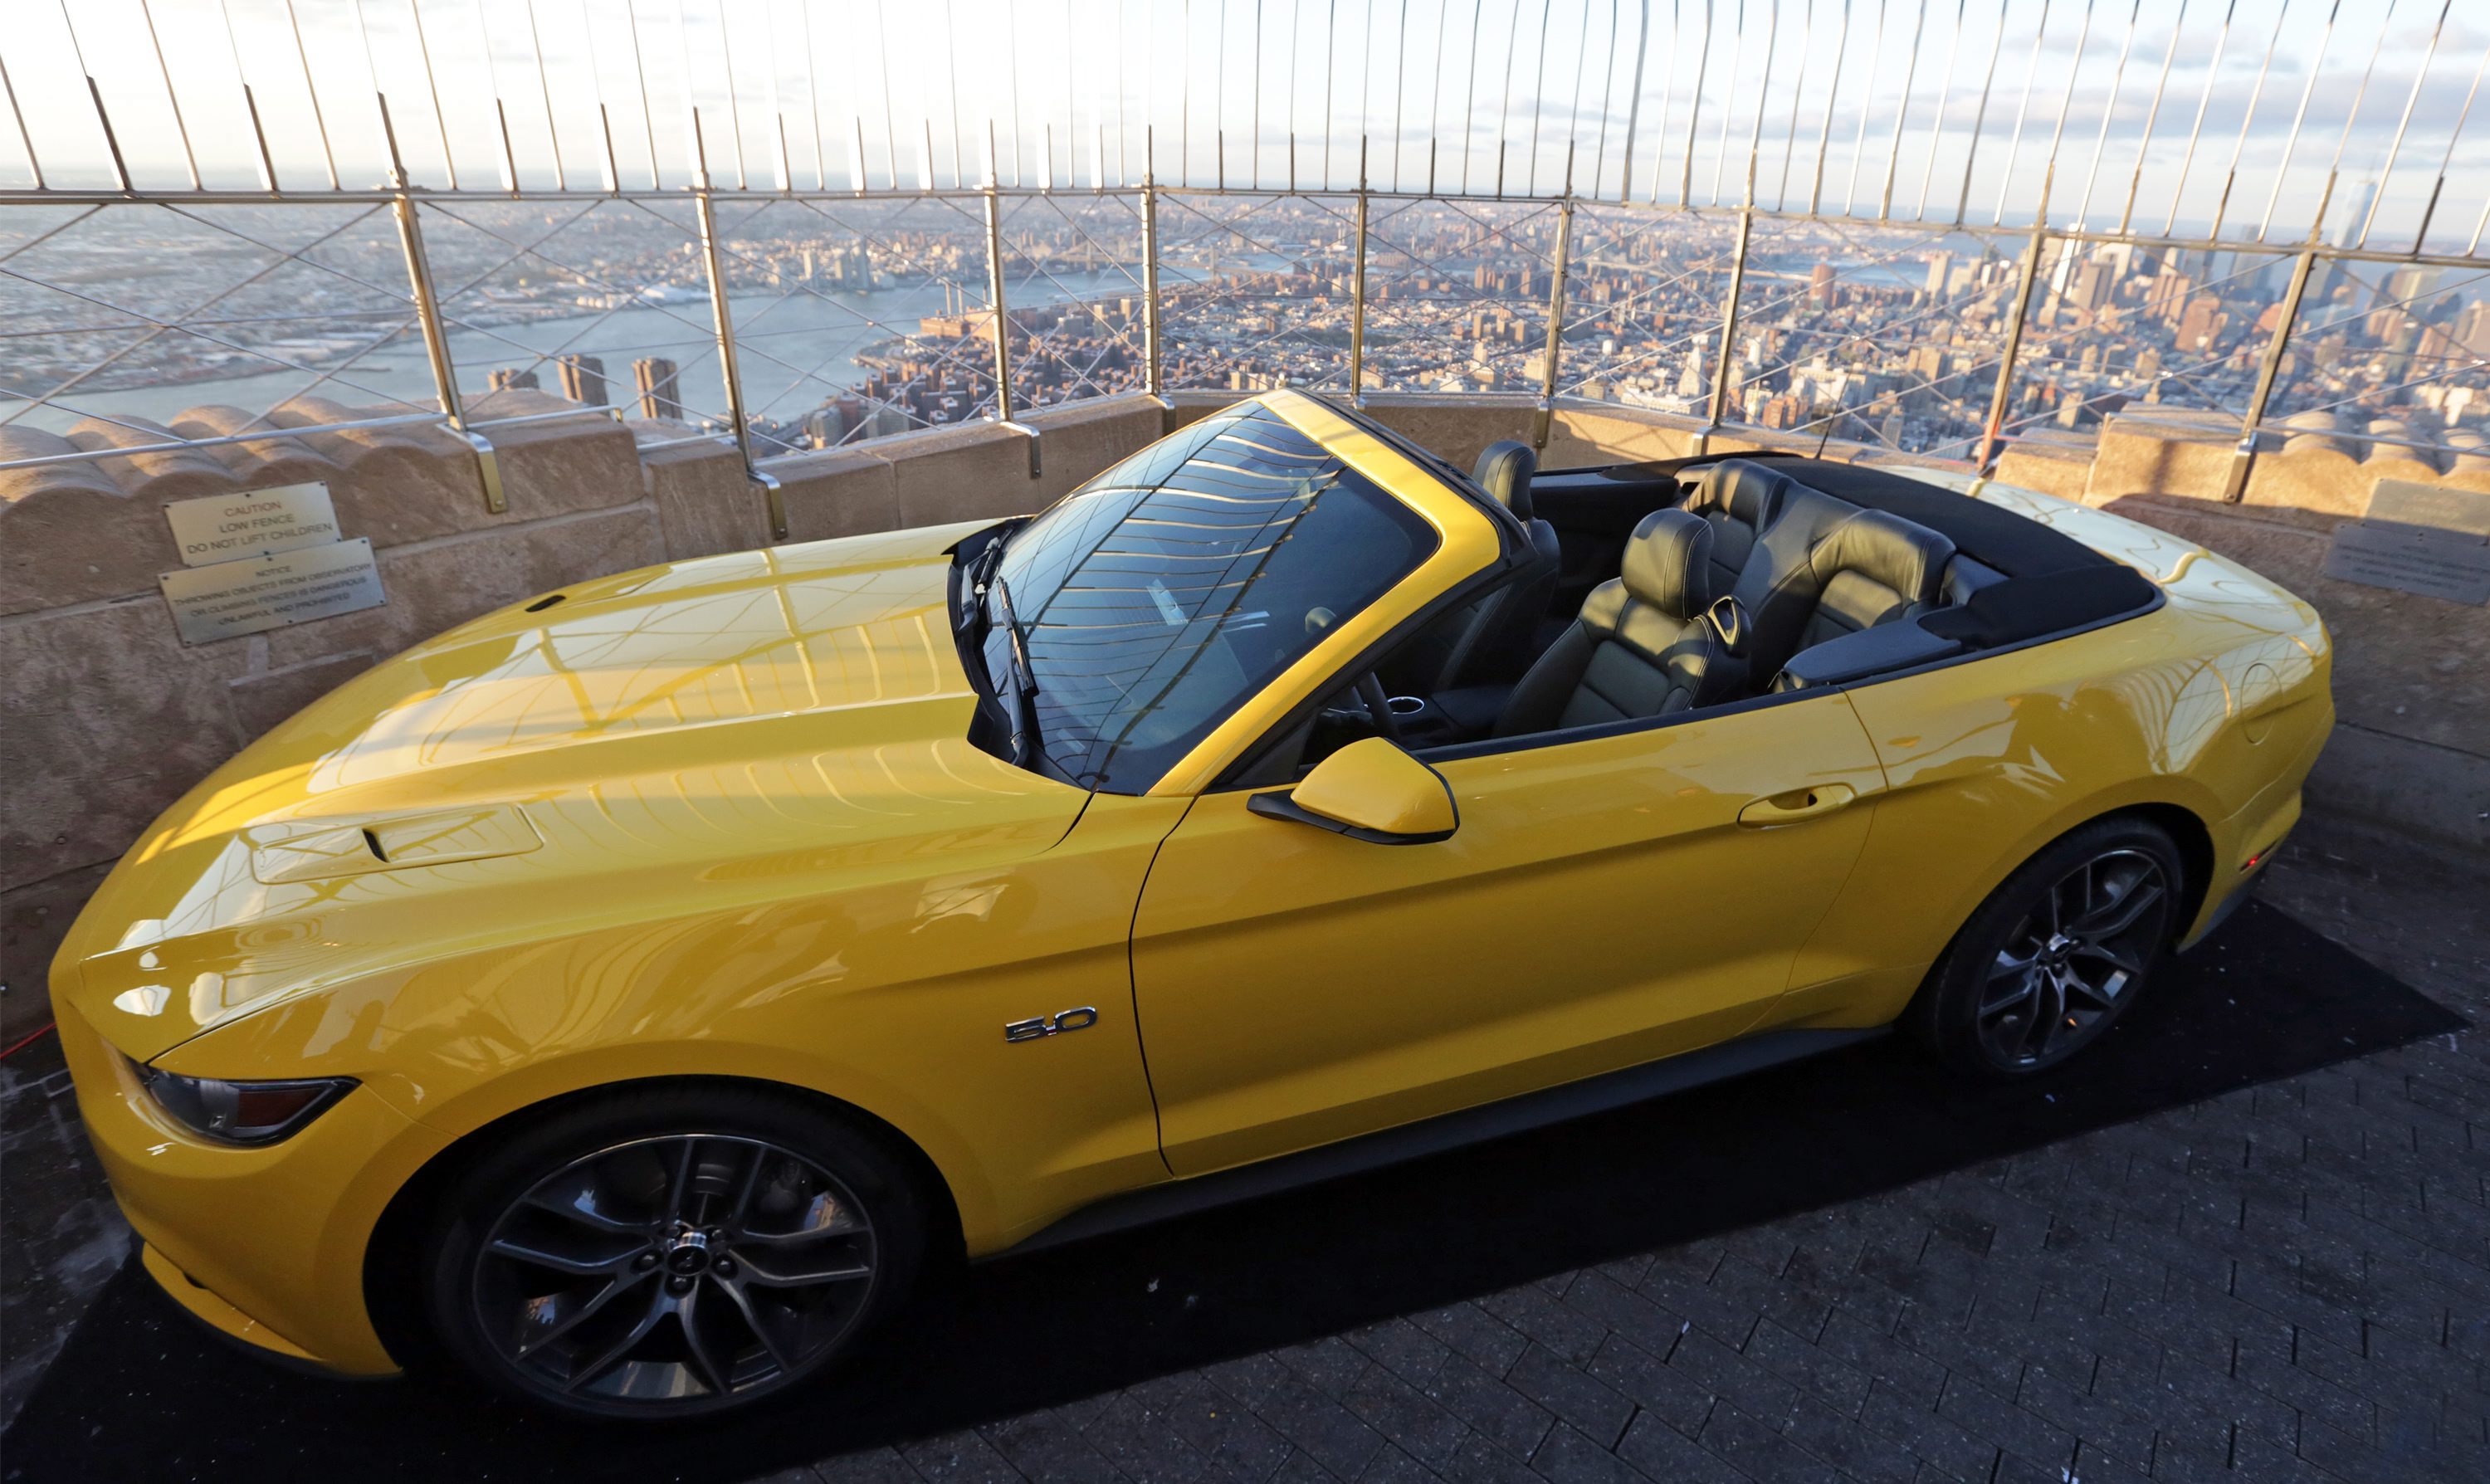 Ford Mustang отново на покрива на Емпайър стейт билдинг